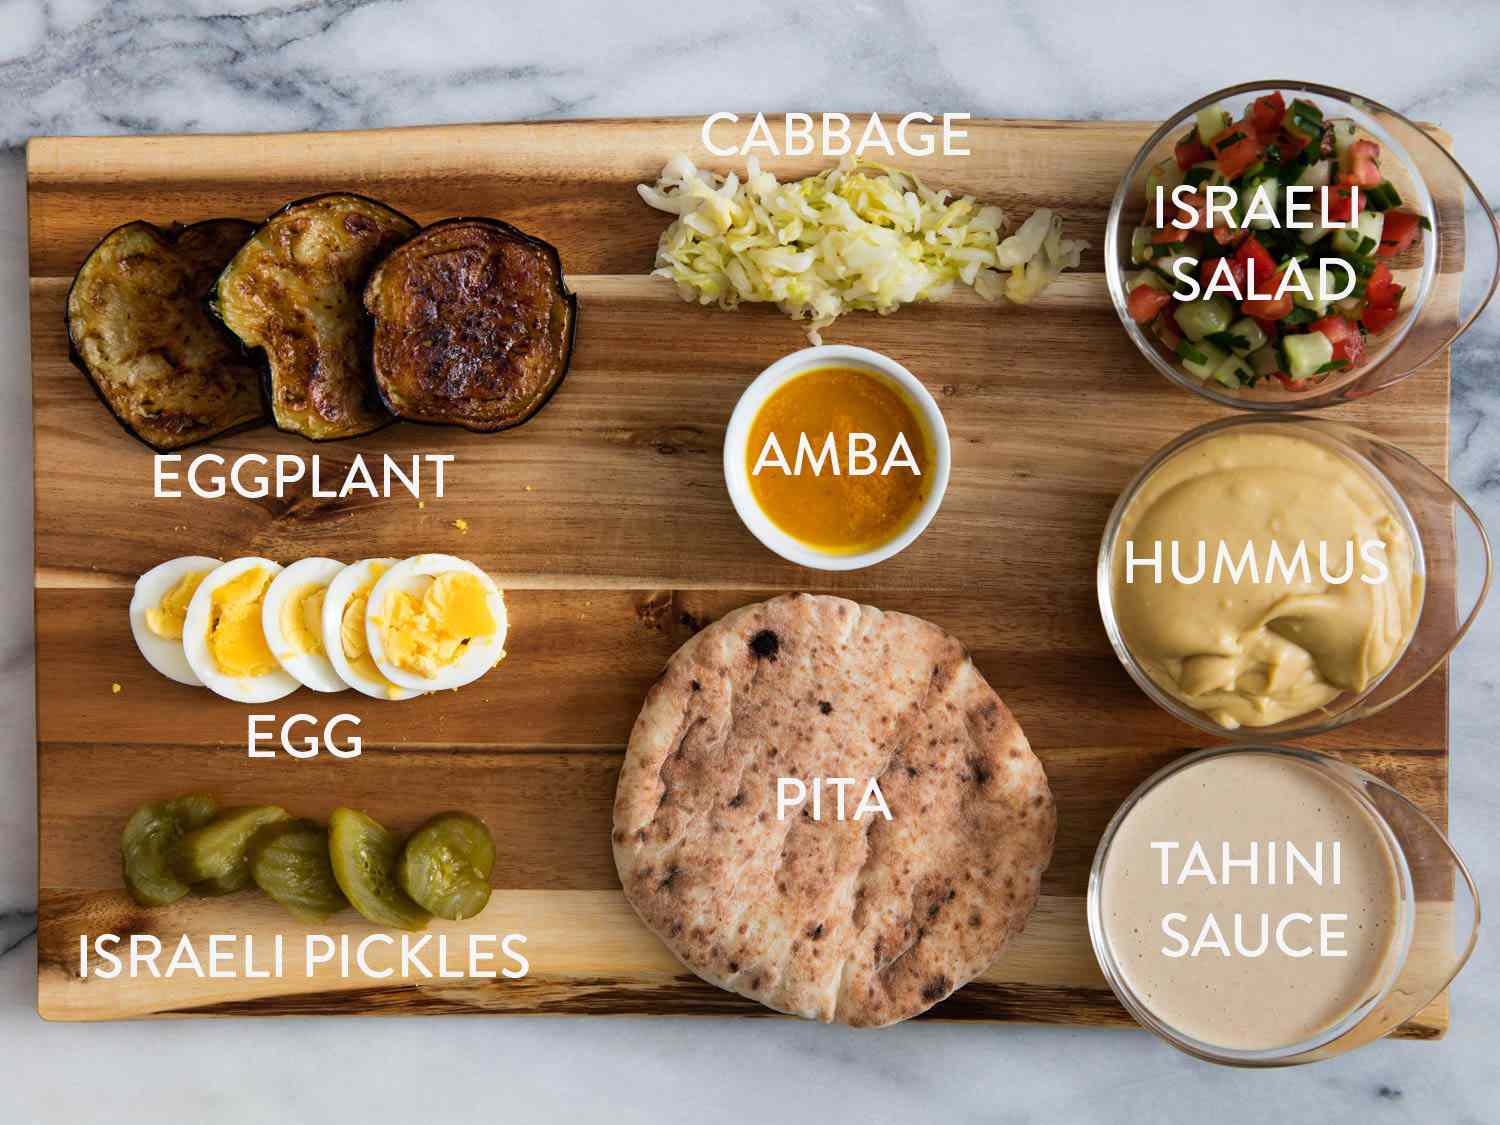 萨比希三明治的所有成分，炸茄子，卷心菜，安巴，沙拉，煮鸡蛋，以色列泡菜，皮塔饼，鹰嘴豆泥和芝麻酱。